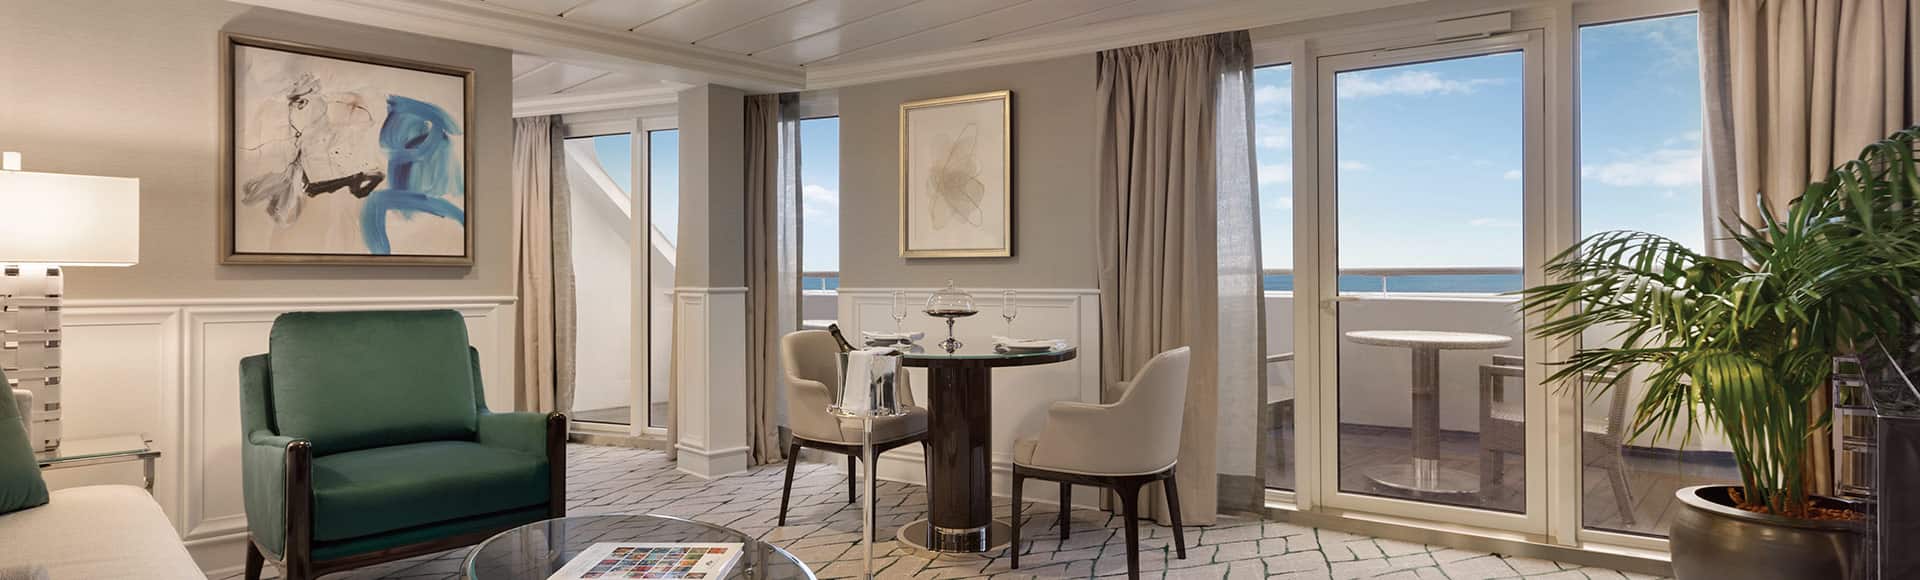 nautica Class Oceania Cruises Suites & Stateroom